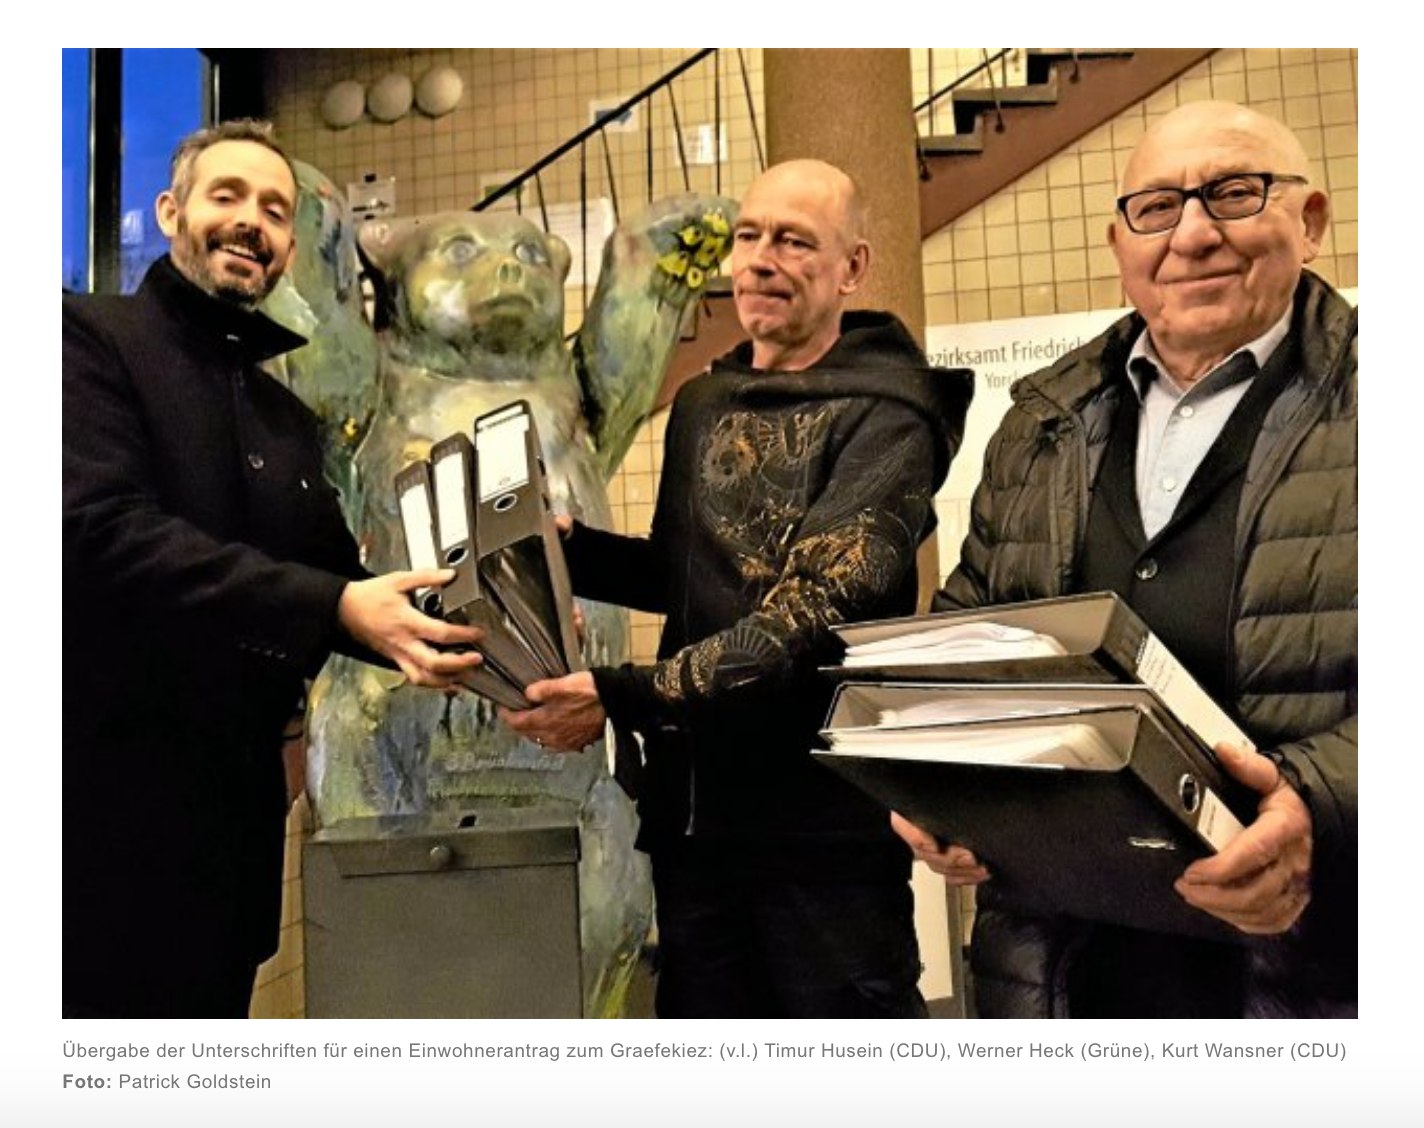 Foto: Patrick Goldstein
Auf dem Bild übergeben unser Kreisvorsitzender Timur Husein und unser Abgeordneter Kurt Wansner die über 1.600 Unterschriften an den BVV-Vorsteher Werner Heck.